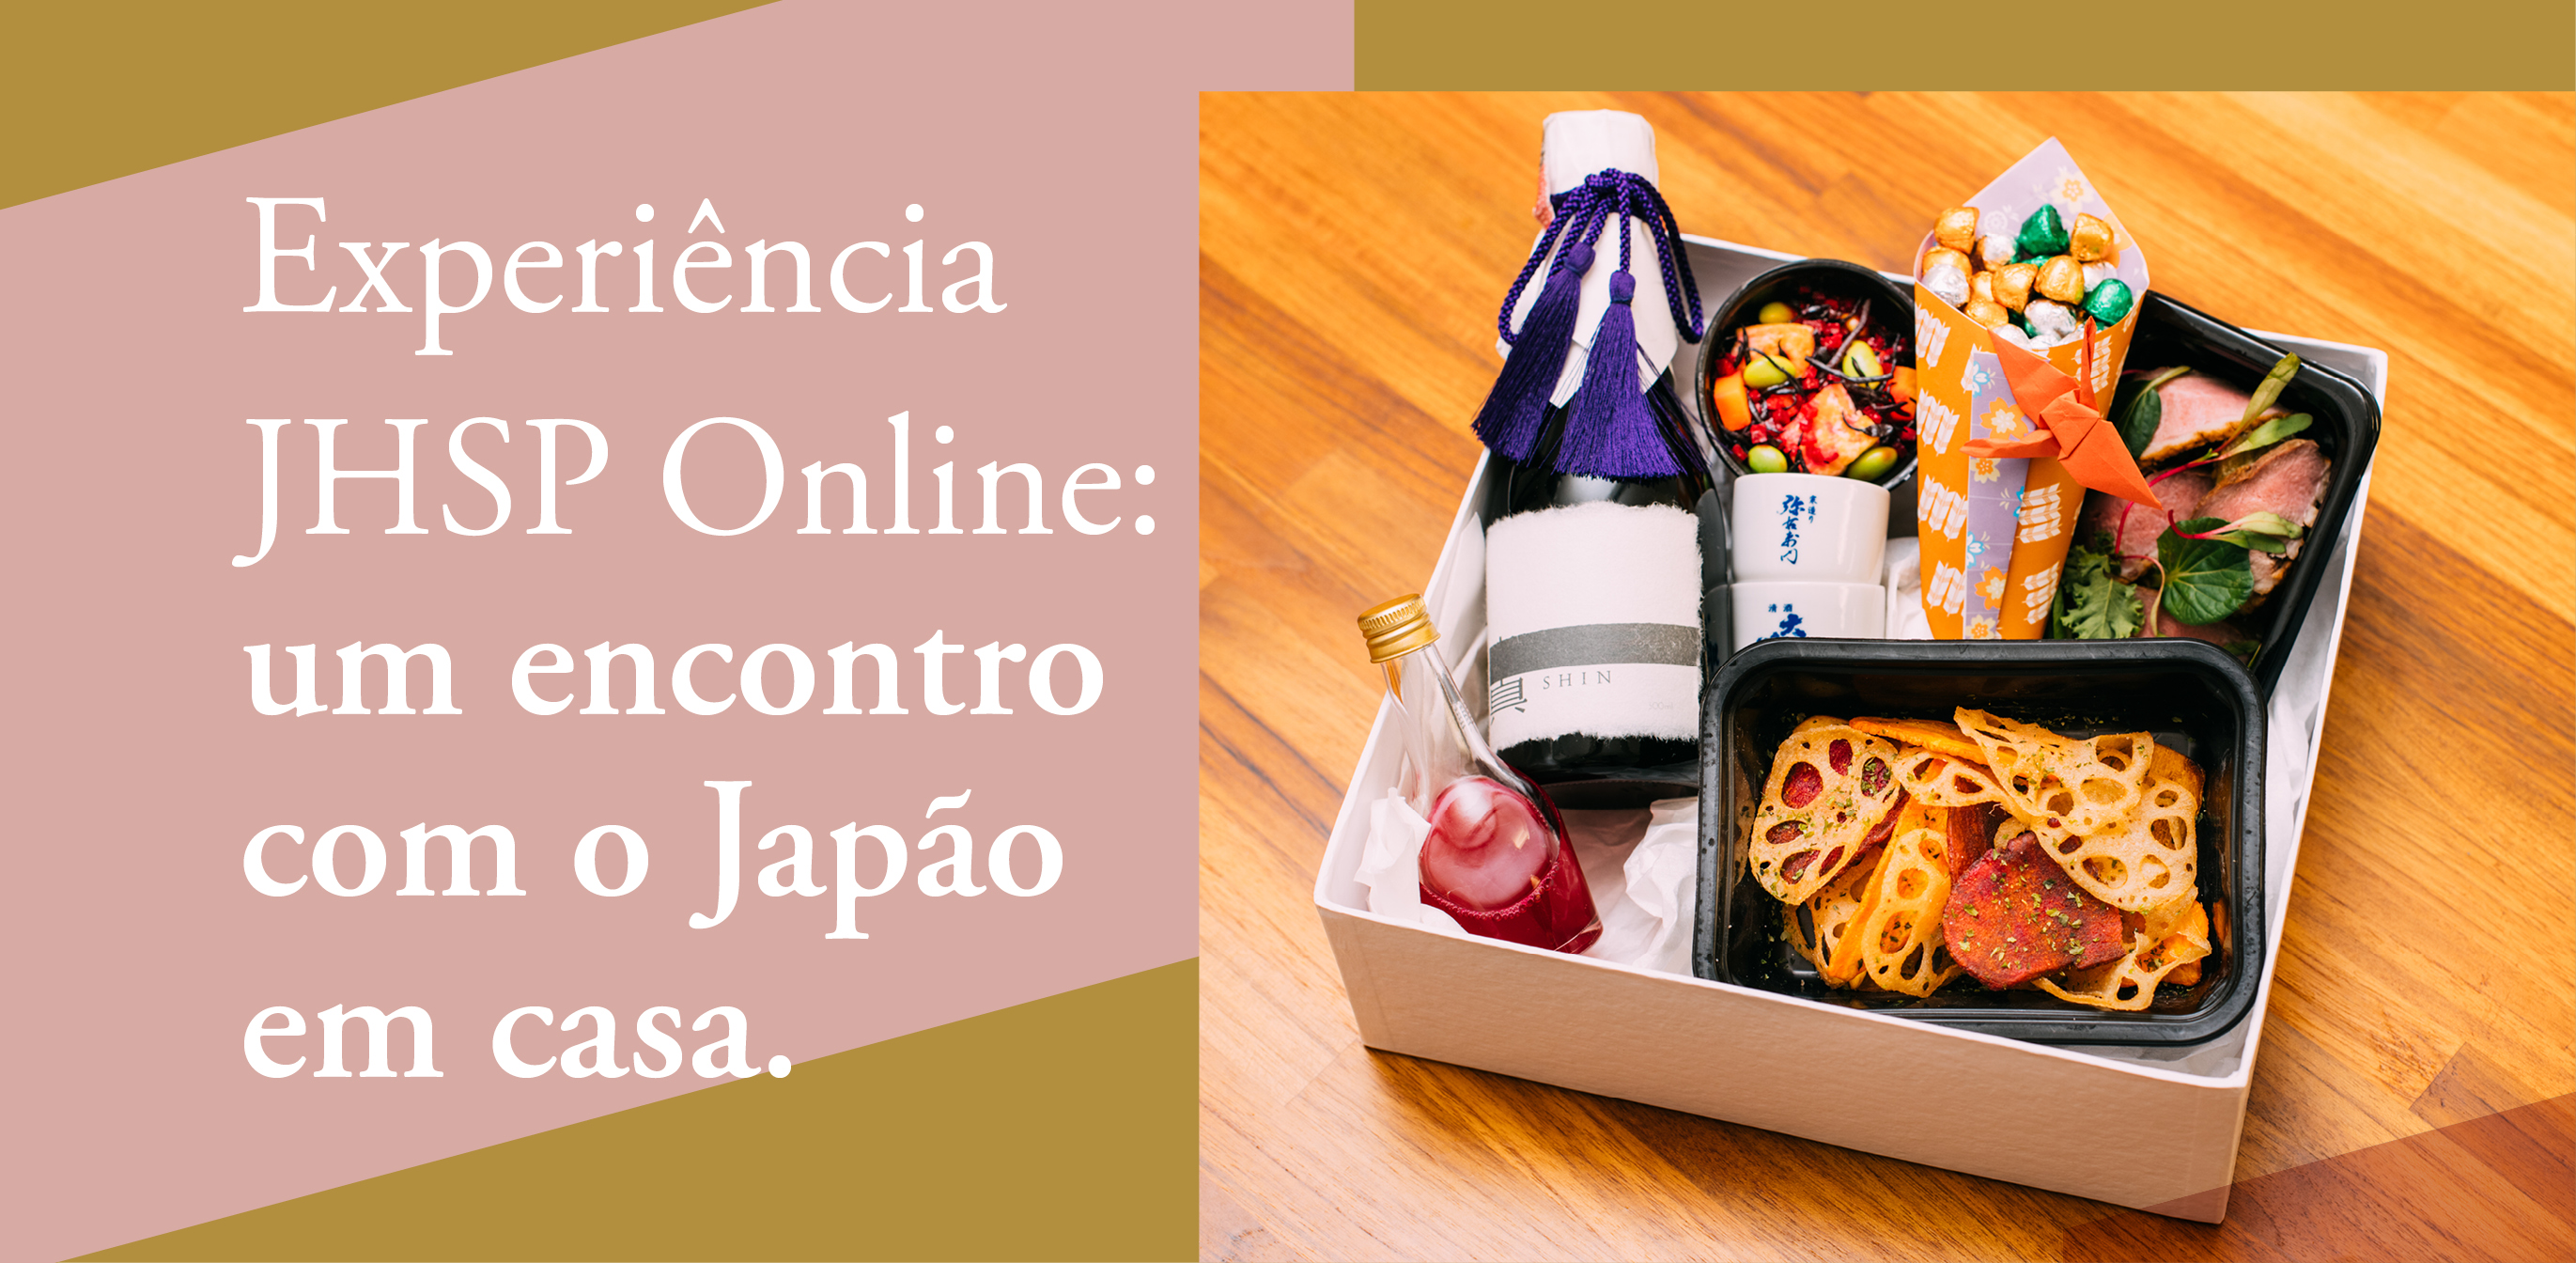 Experiência JHSP Online: um encontro com o Japão em casa